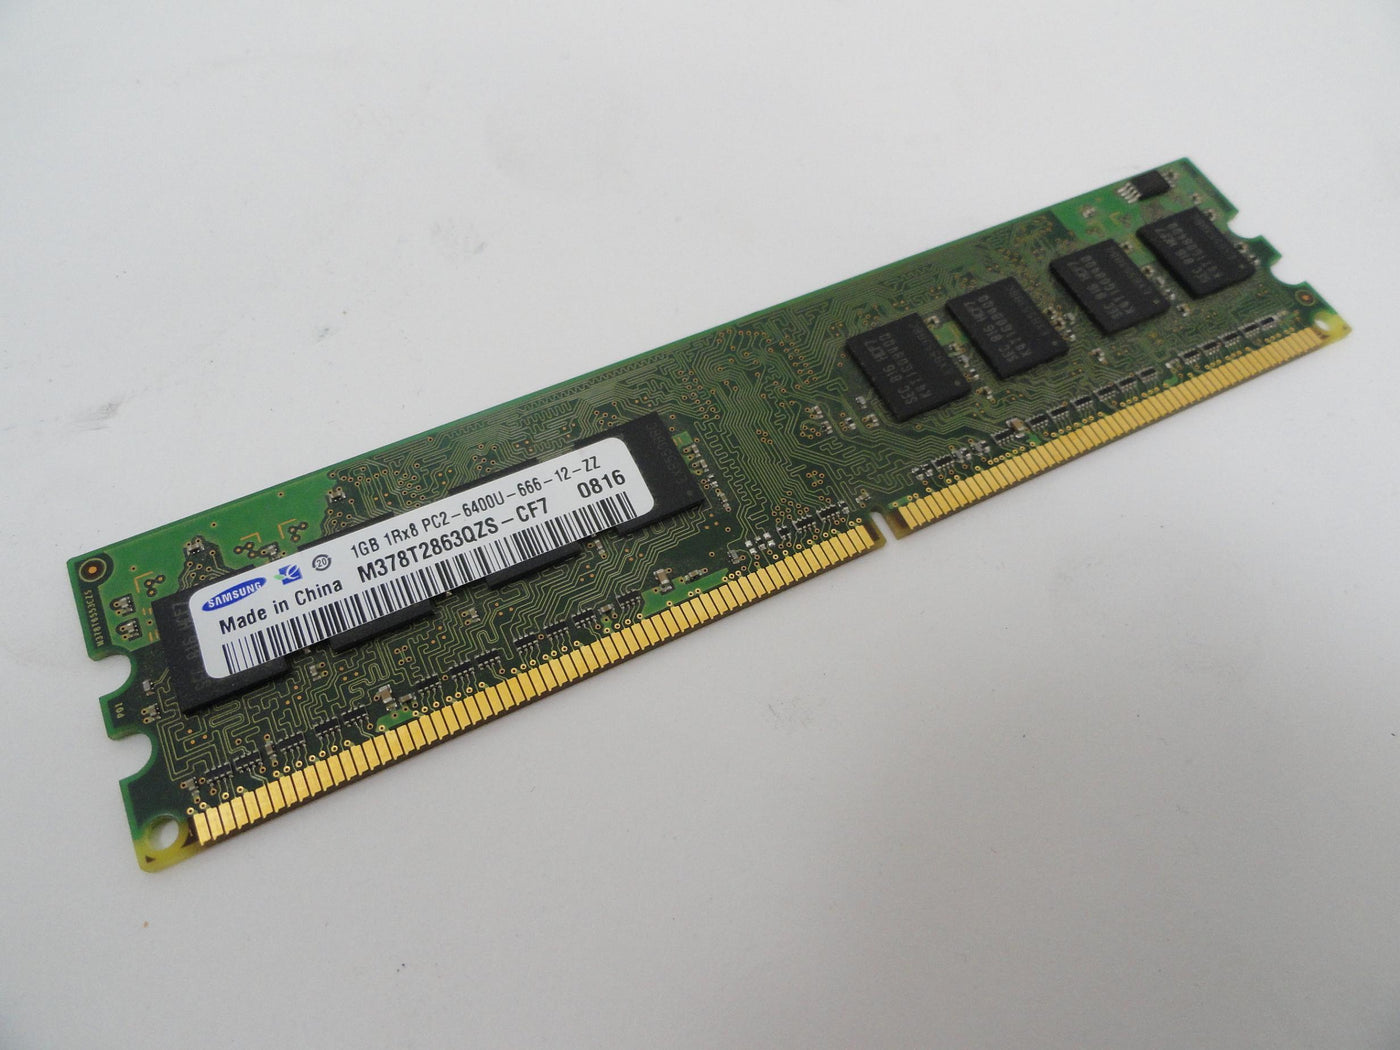 PR16340_M378T2863QZS-CF7_HP 1Gb PC2-6400 DDR2-800MHz DIMM RAM Module - Image3